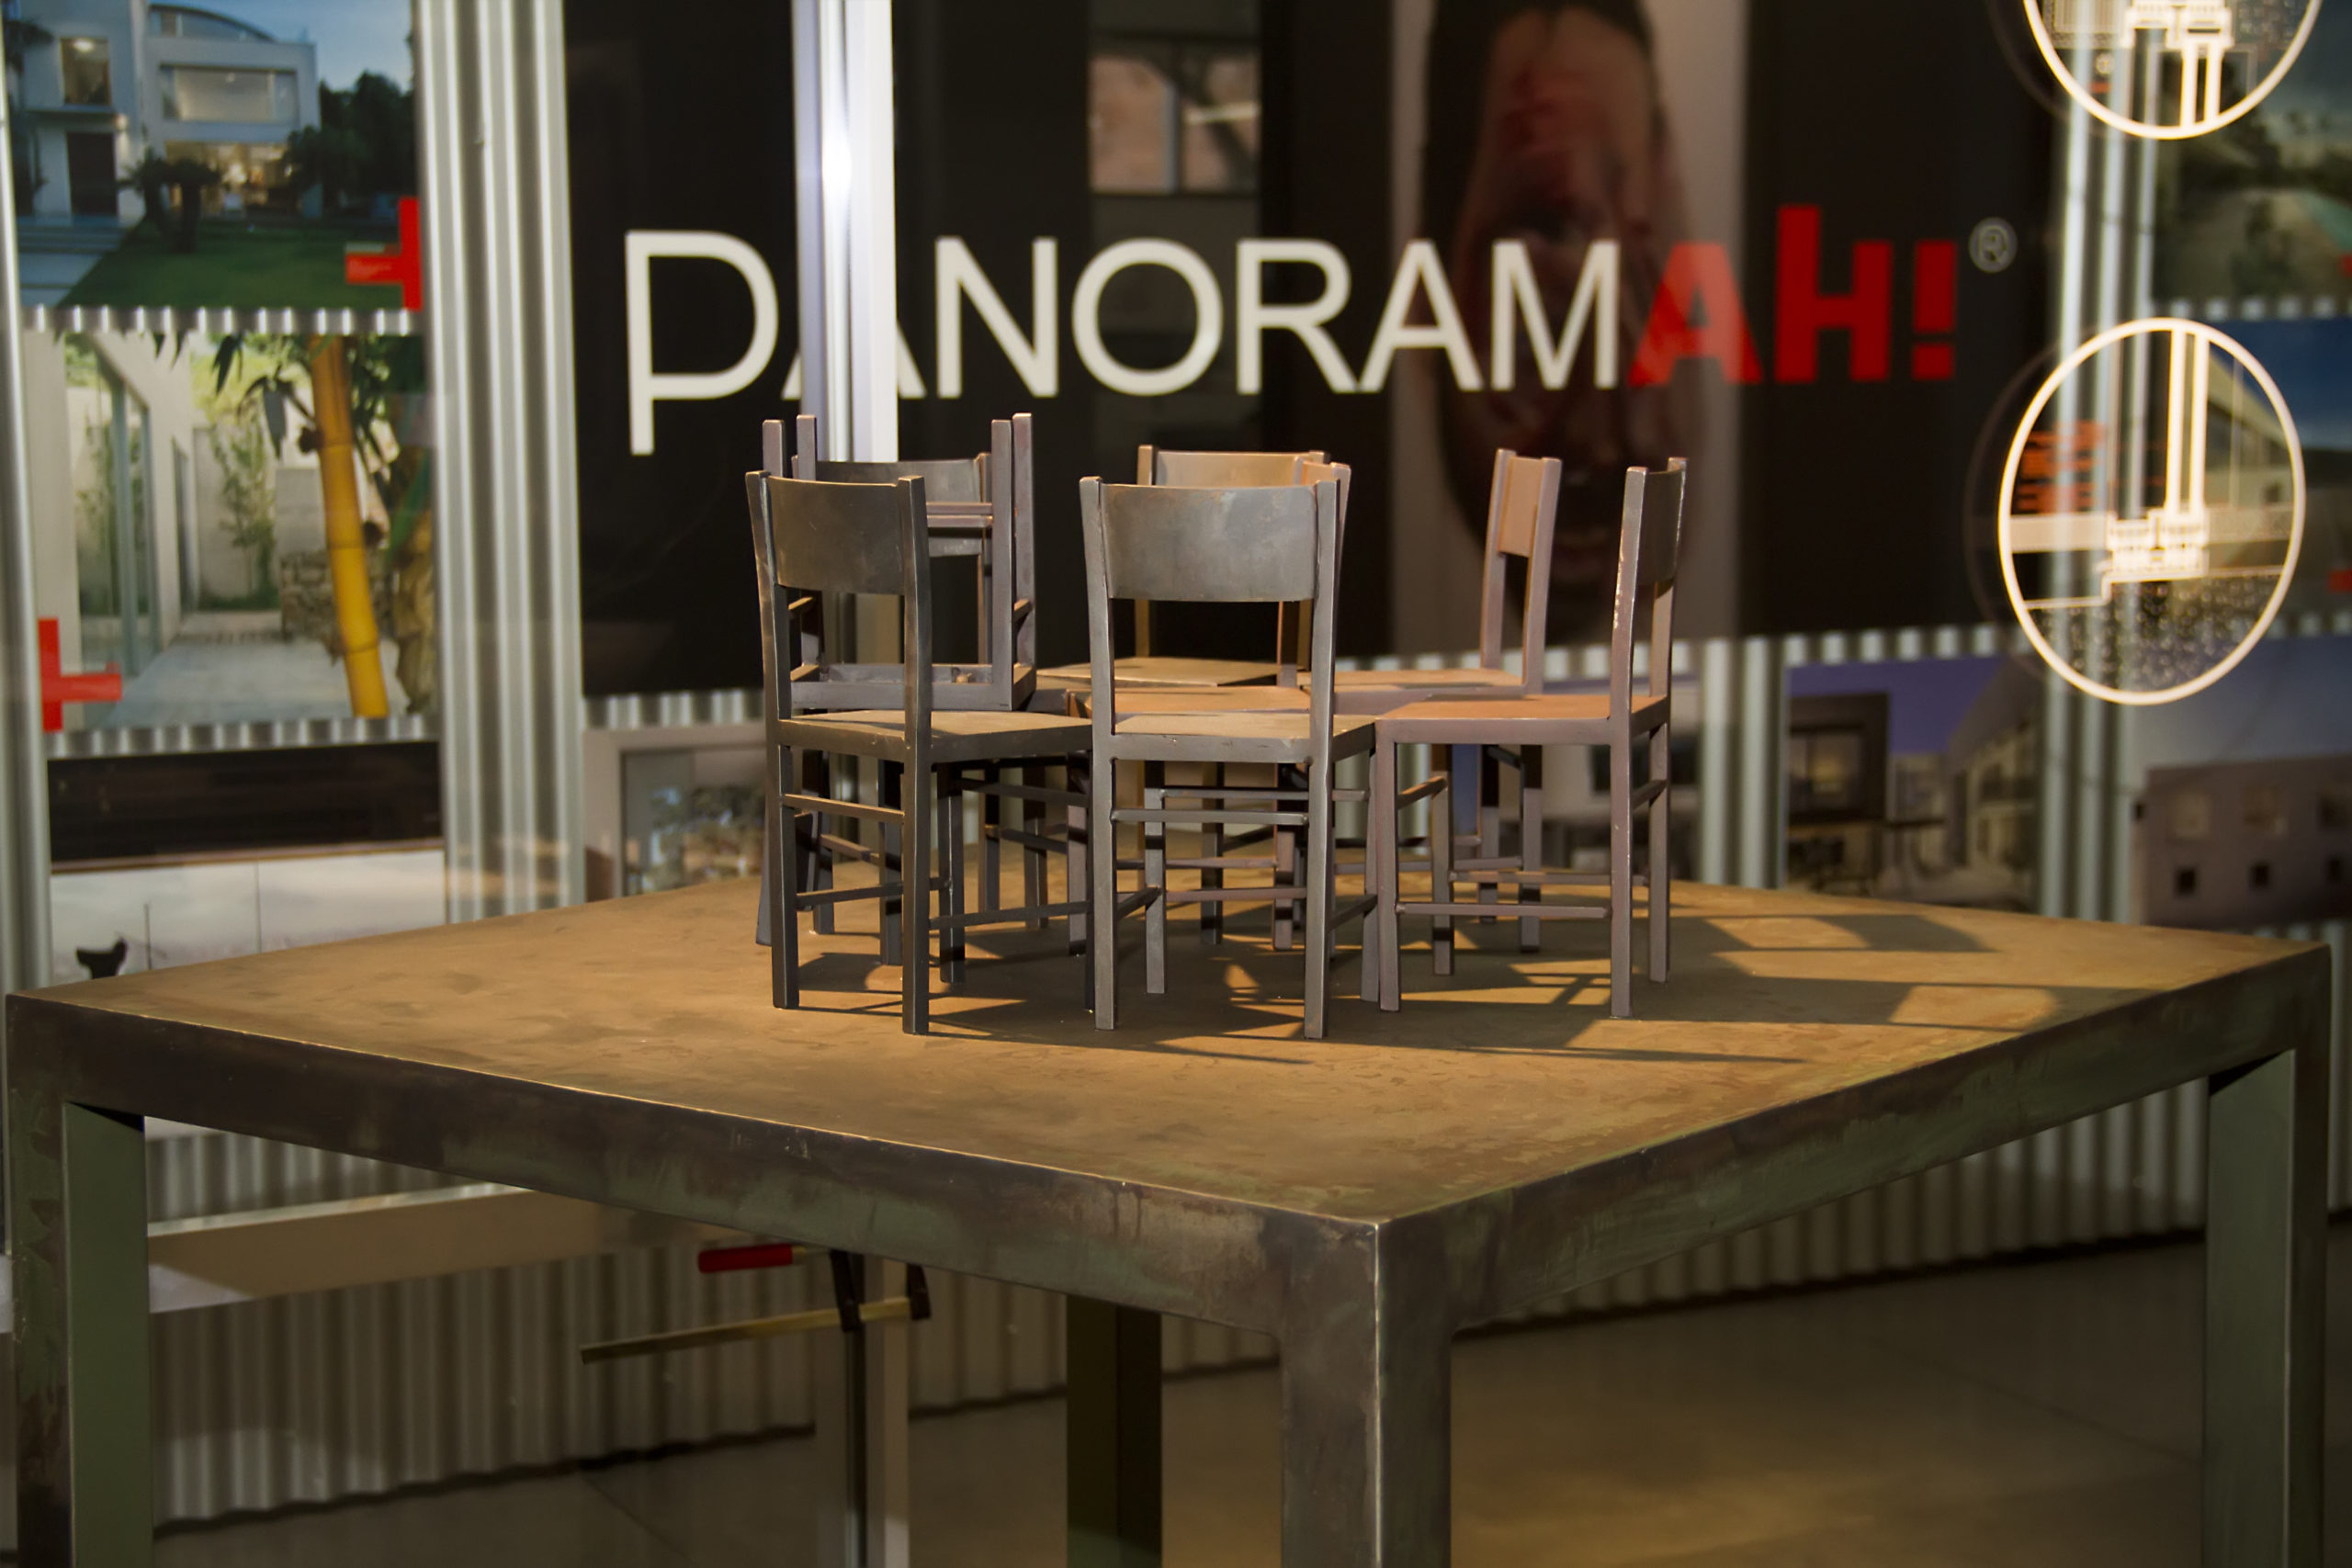 PANORAMAH! abre sus ventanas minimalistas al mundo del arte